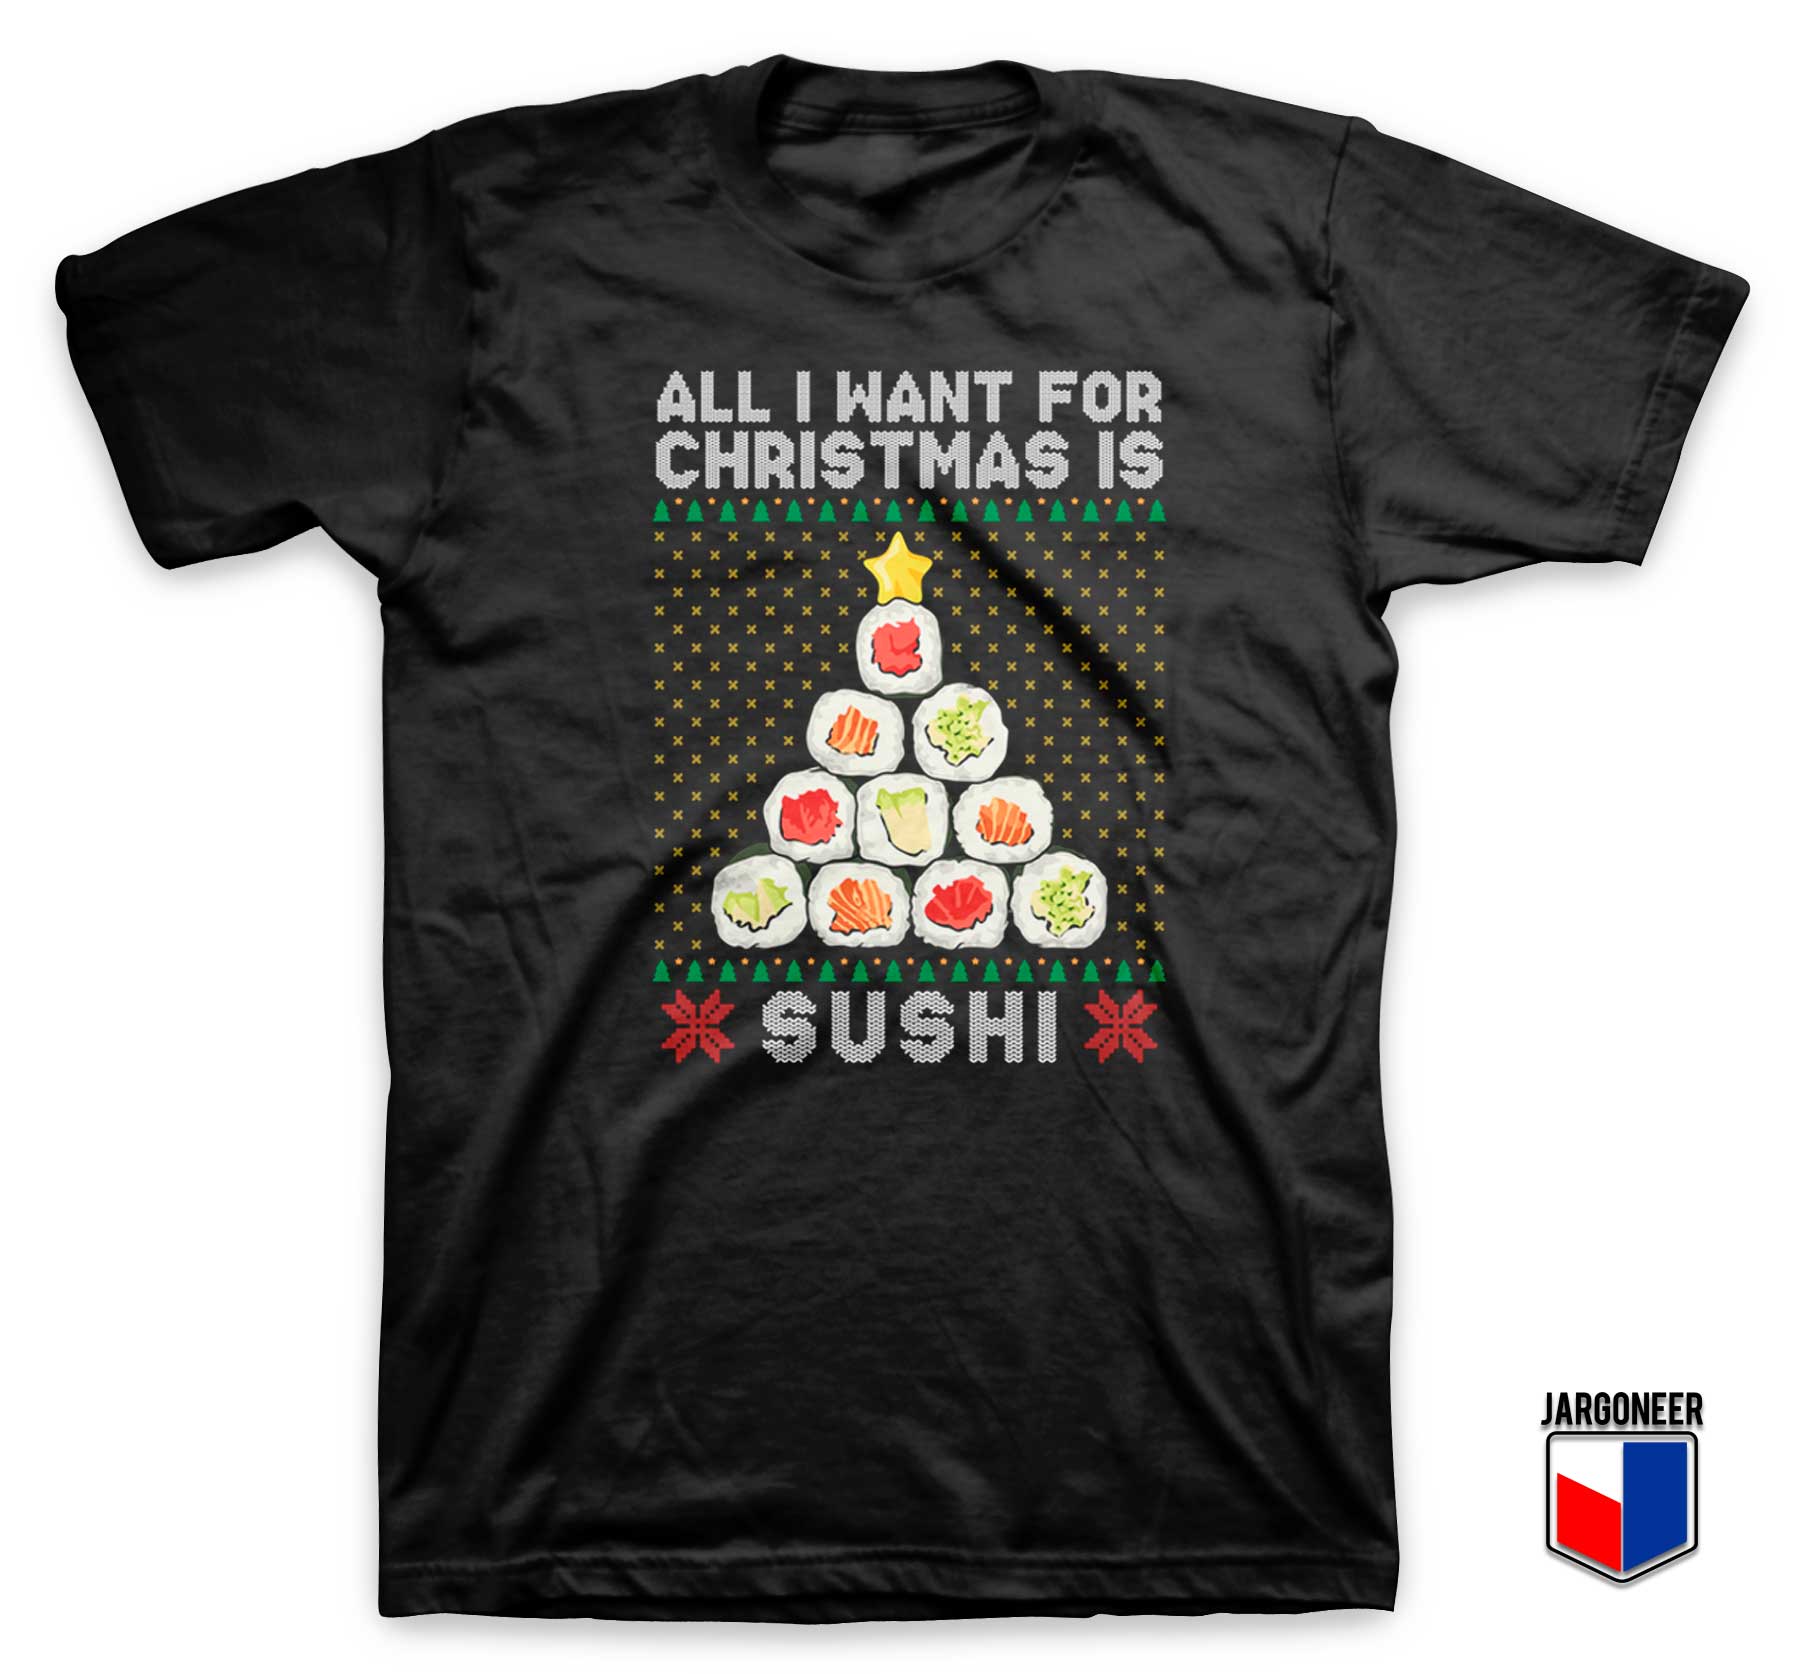 Sushi Christmas Time T Shirt - Shop Unique Graphic Cool Shirt Designs